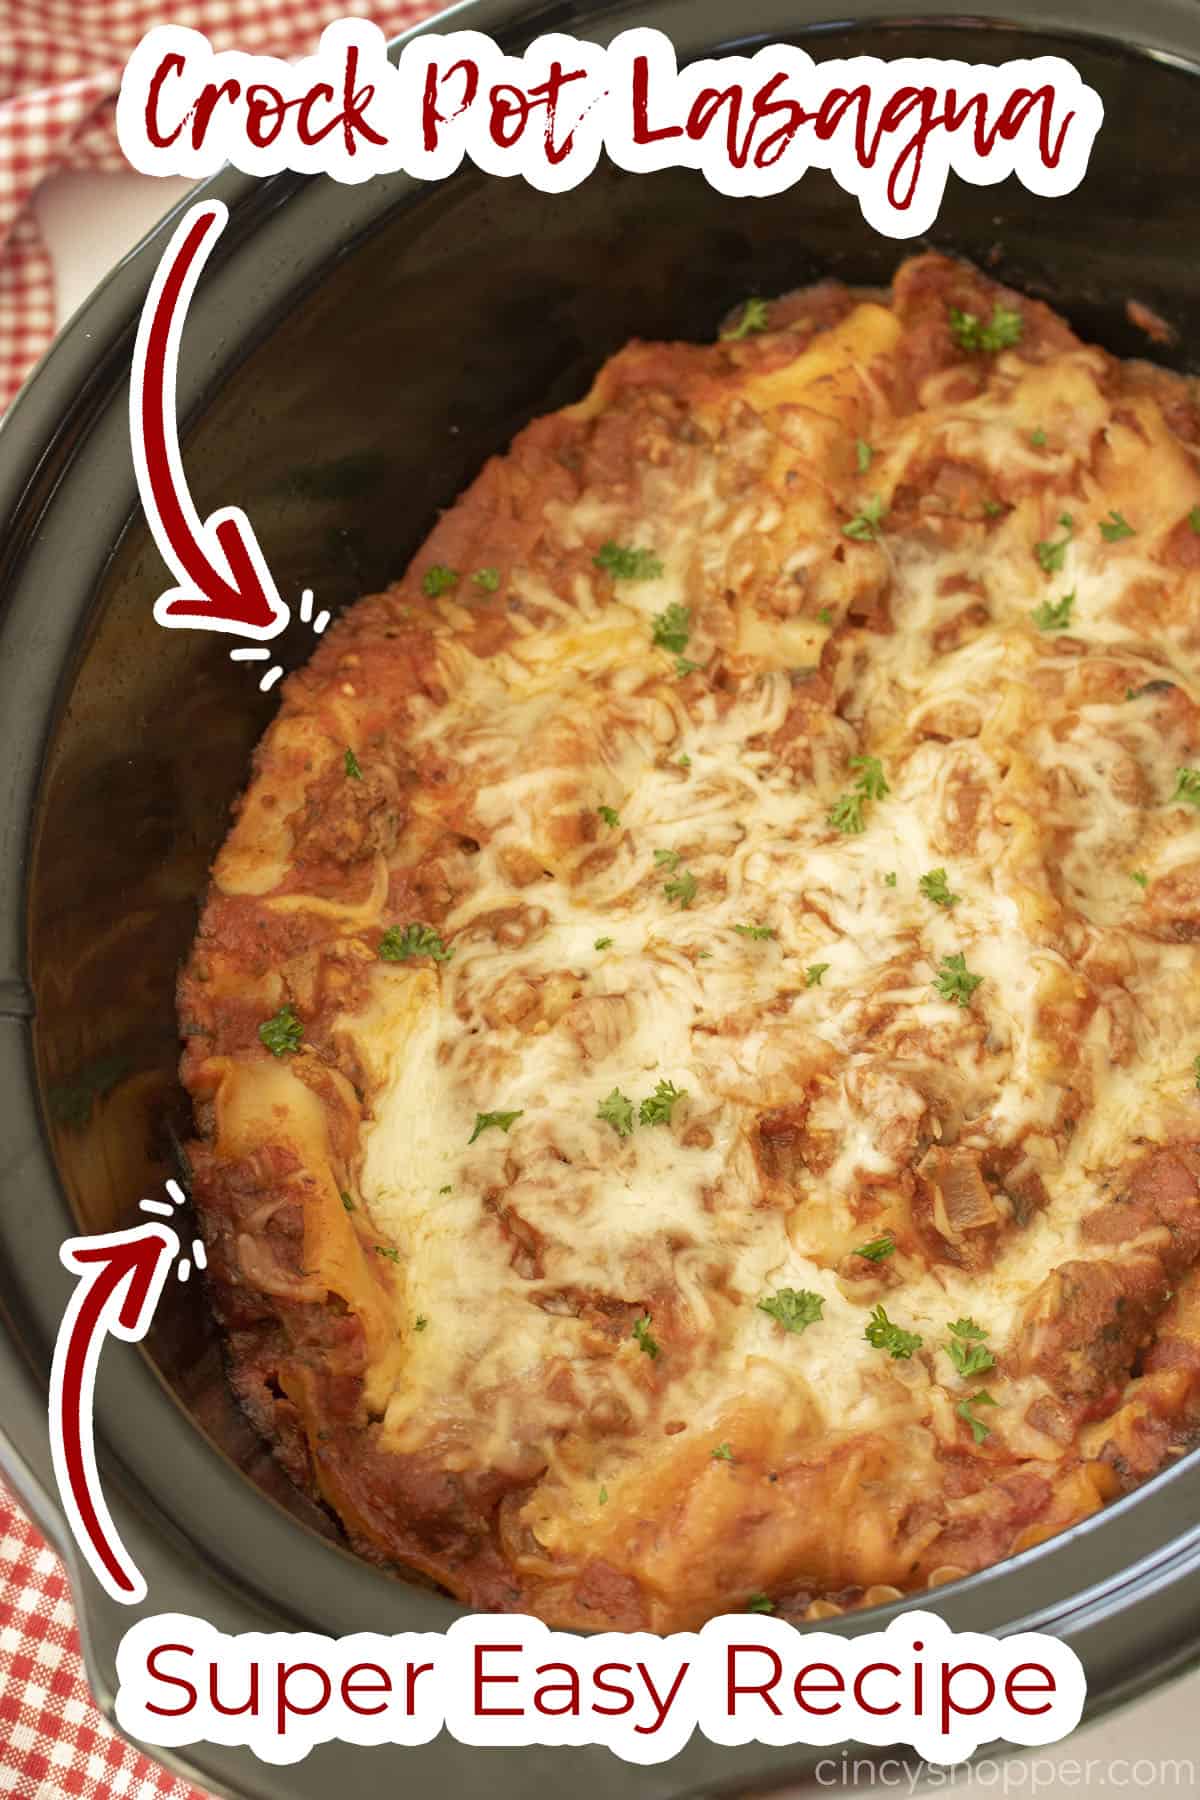 Text on image Crock Pot Lasagna Super Easy Recipe.